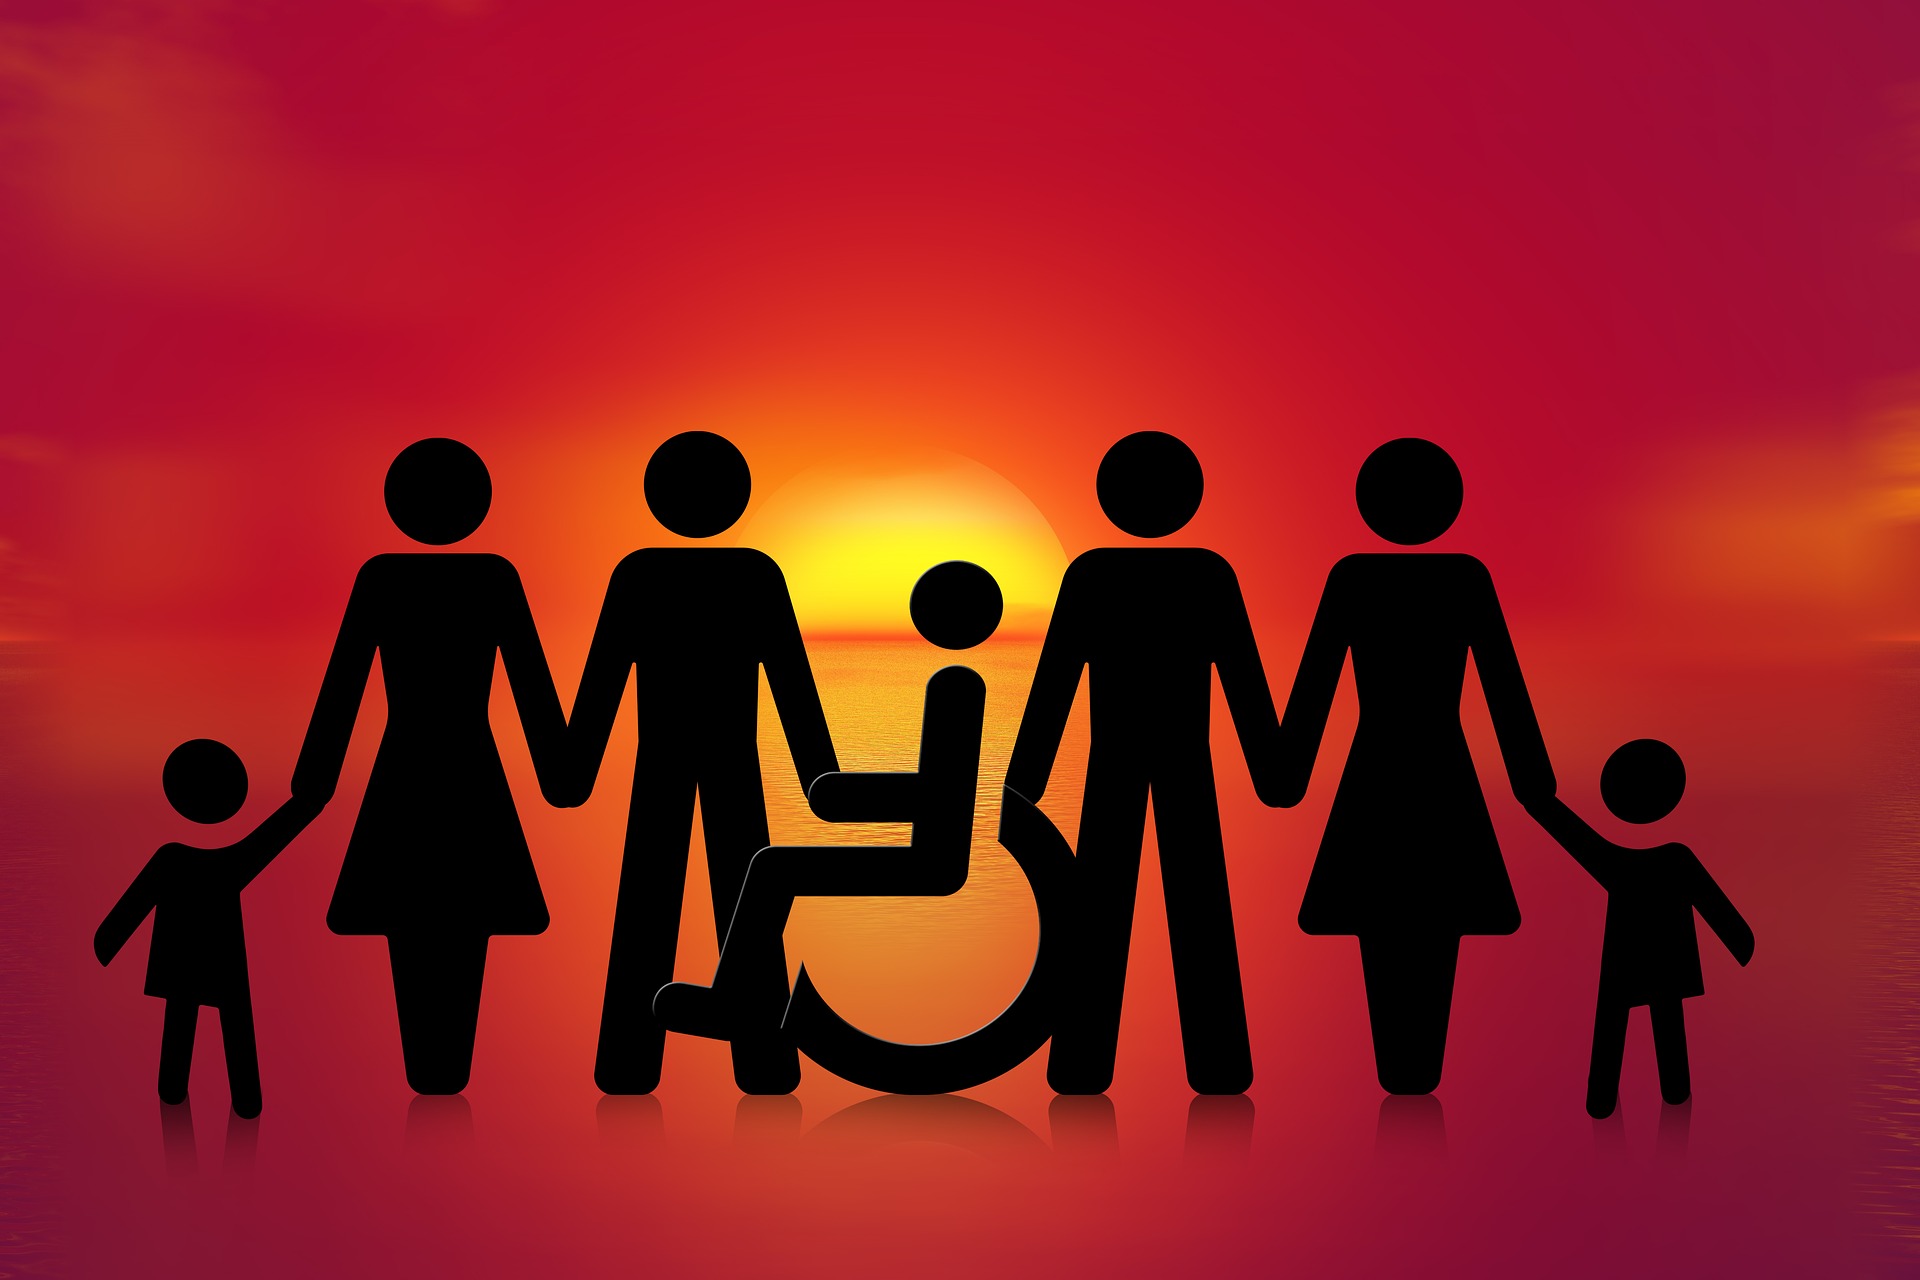 Das Bild zeigt eine Menschengruppe inklusive eines Rollstuhlfahrers und symbolisiert Inklusion.